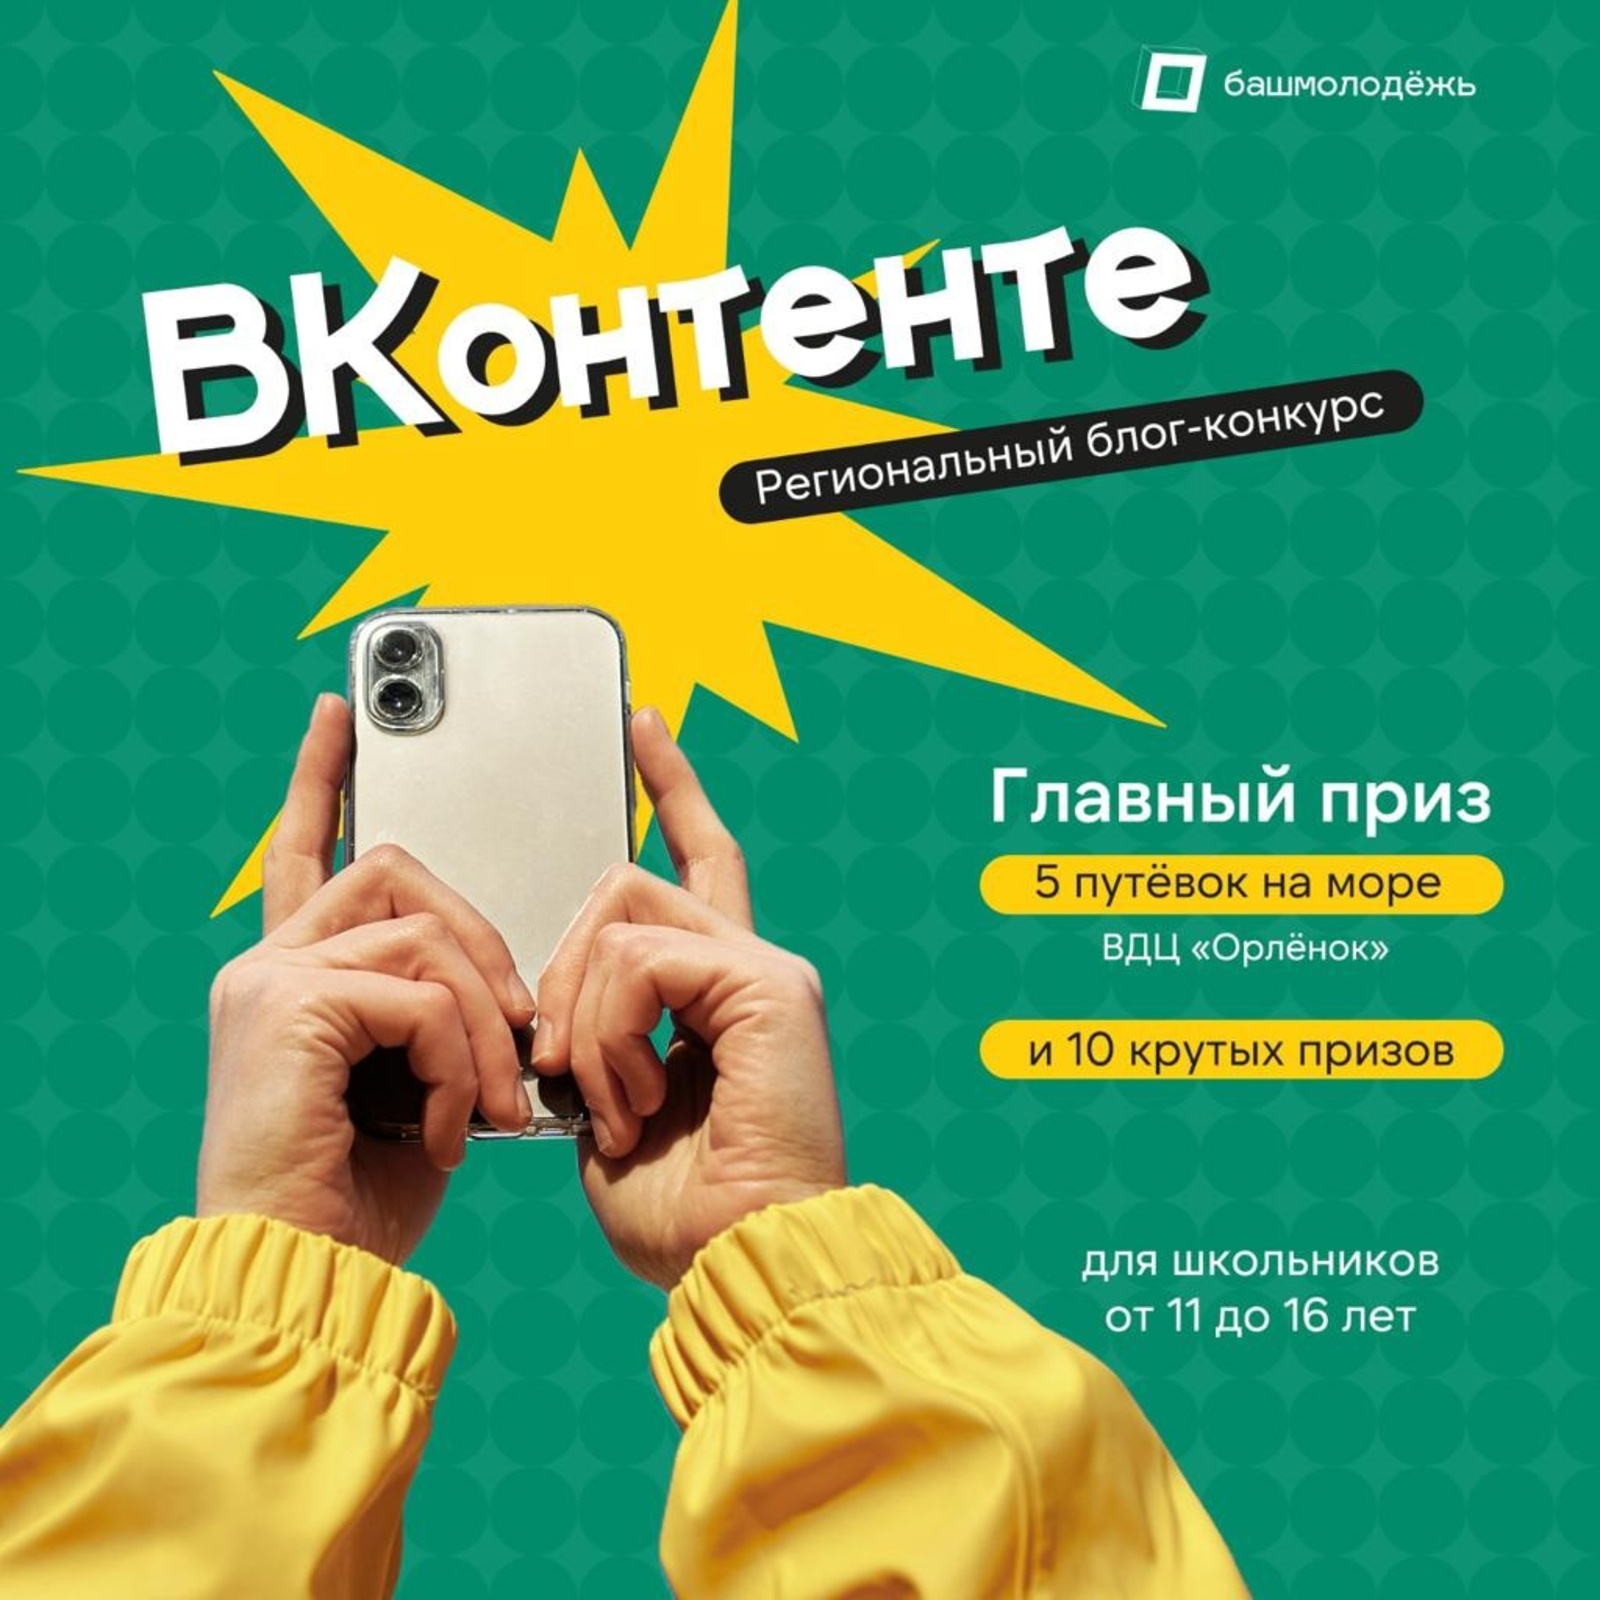 В Башкортостане стартовал блог-конкурс для школьников